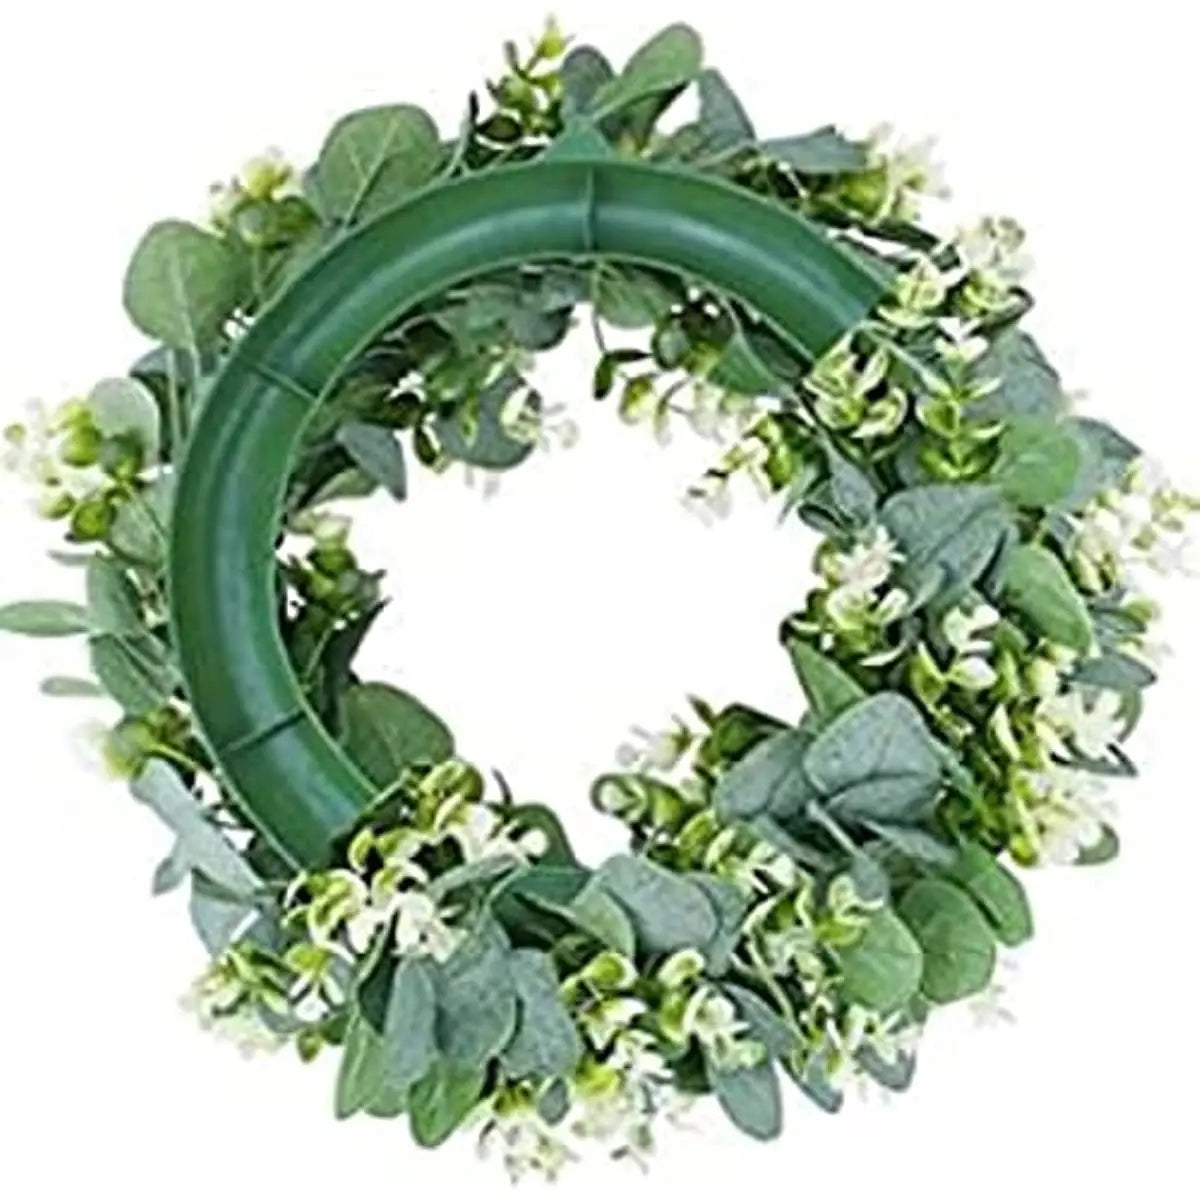 https://creationsbychrisandcarlos.store/products/35cm-eucalyptus-wreath-front-door-wreath-green-leaves-wreath-spring-door-wreath-outdoor-artificial-greenery-hanging-wreath